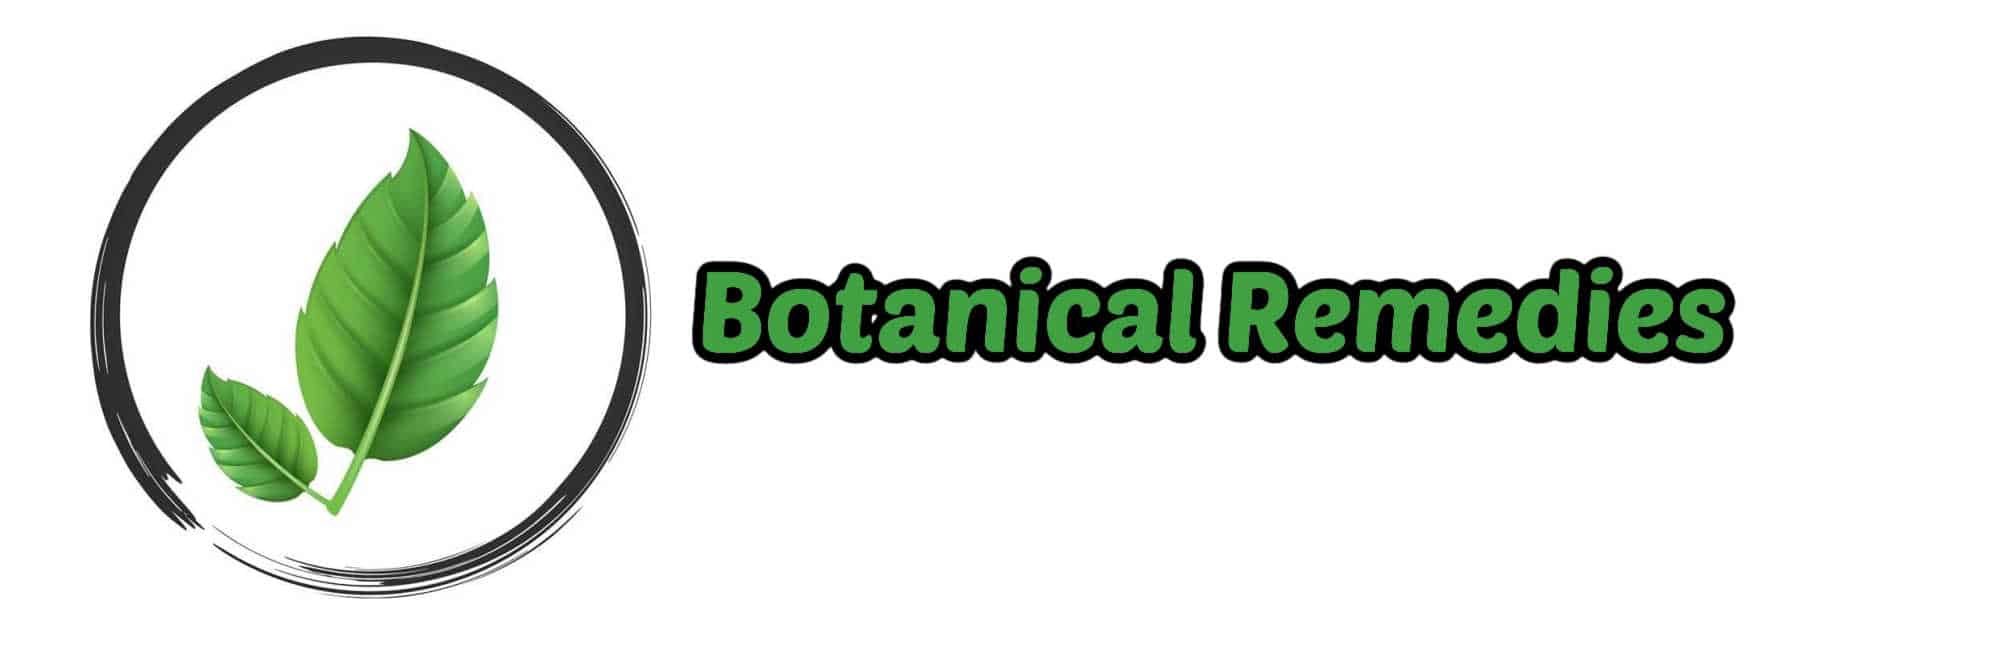 image of botanical remedies logo